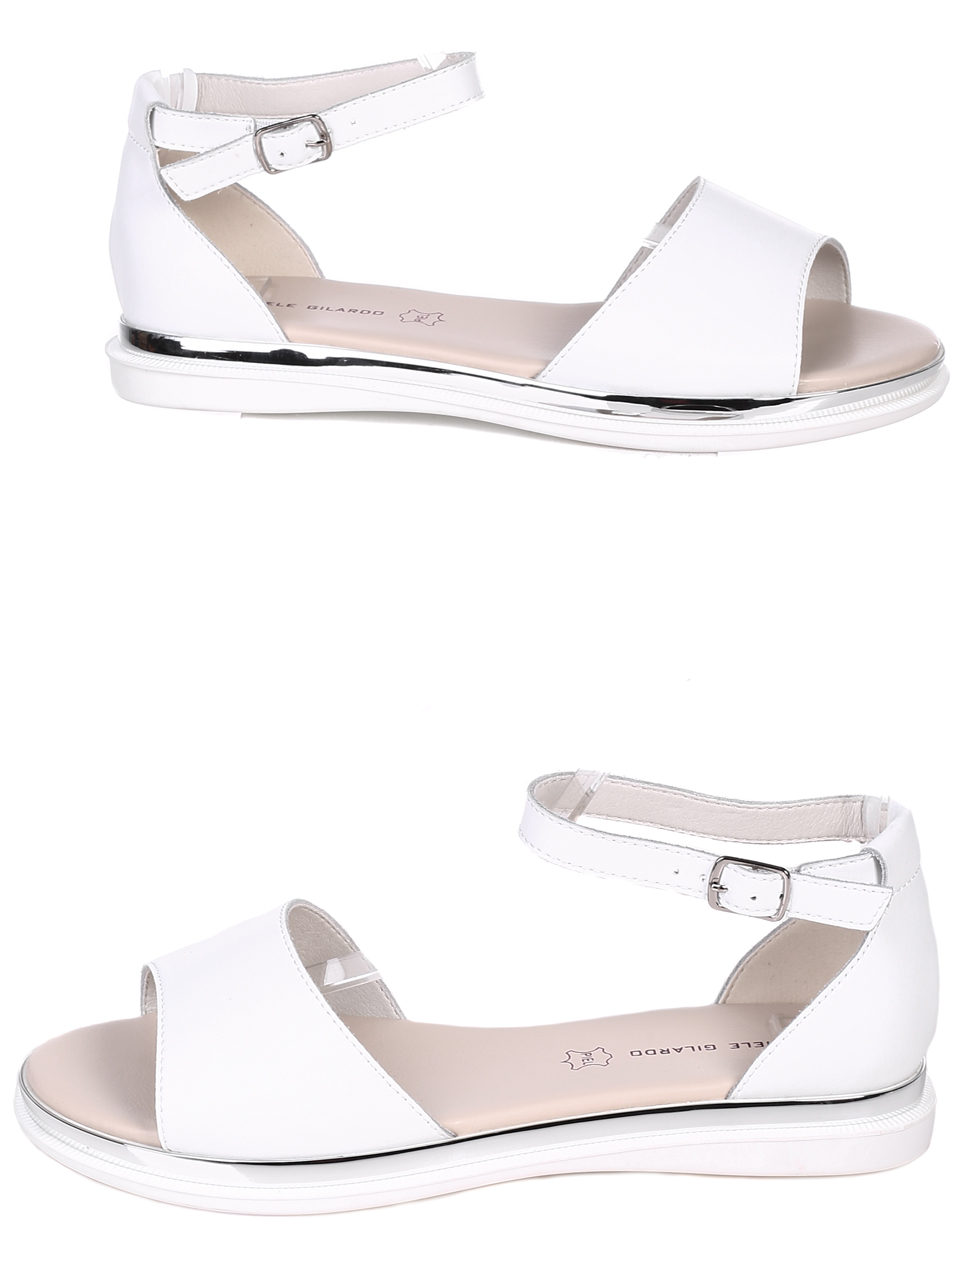 Ежедневни дамски равни сандали от естествена кожа в бяло 4AF-22191 white